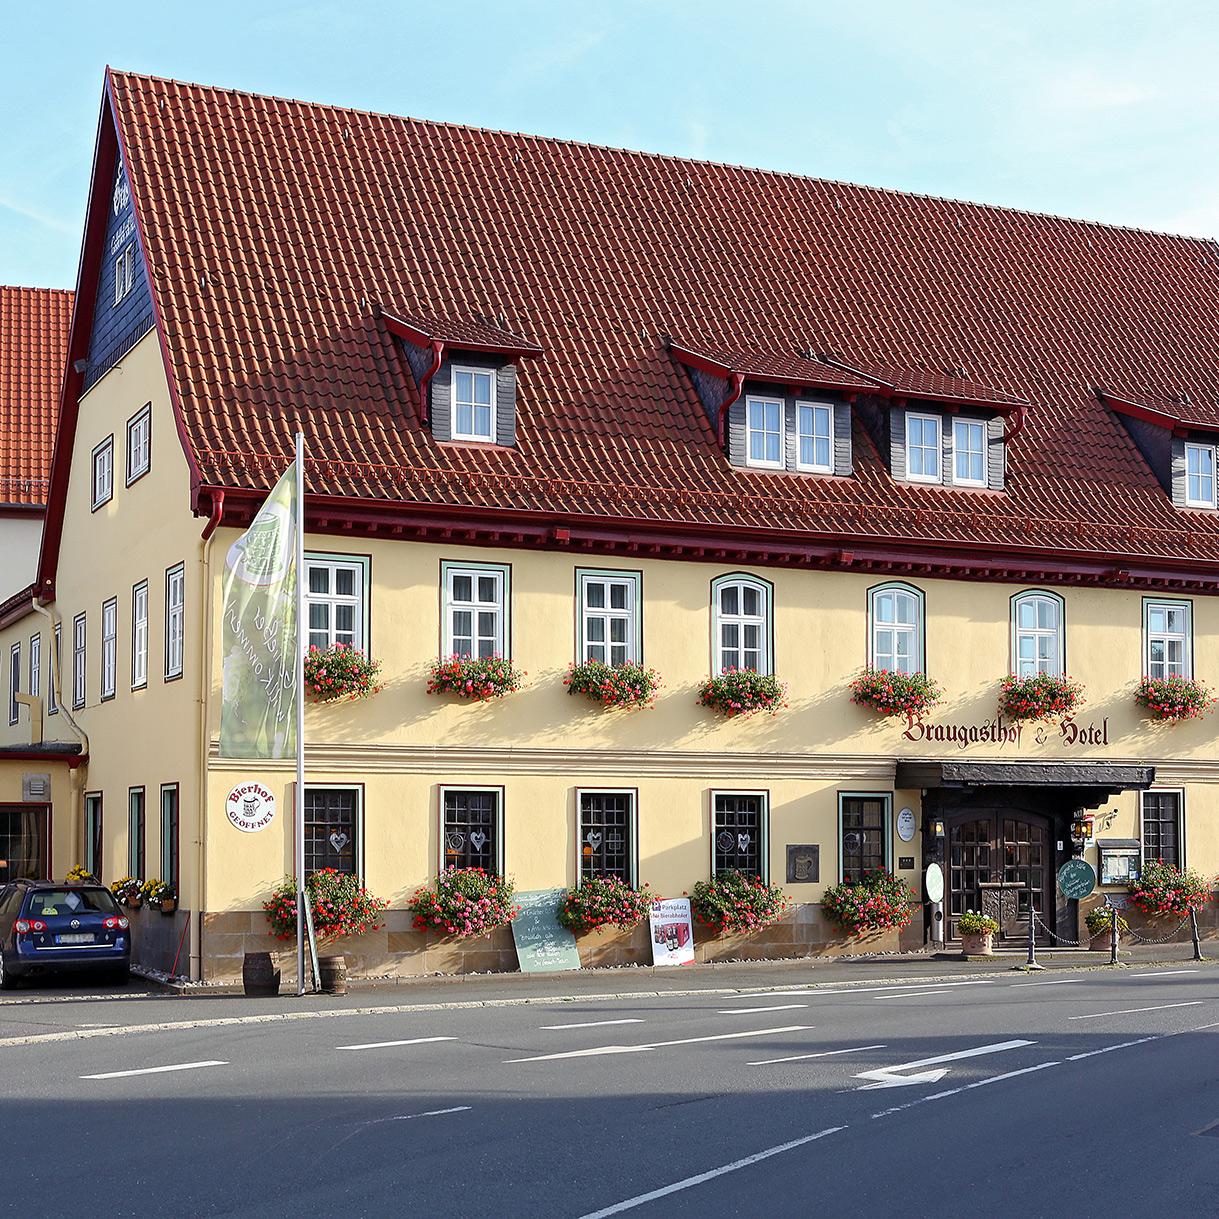 Restaurant "Der Grosch Hotel Brauereigasthof" in Rödental